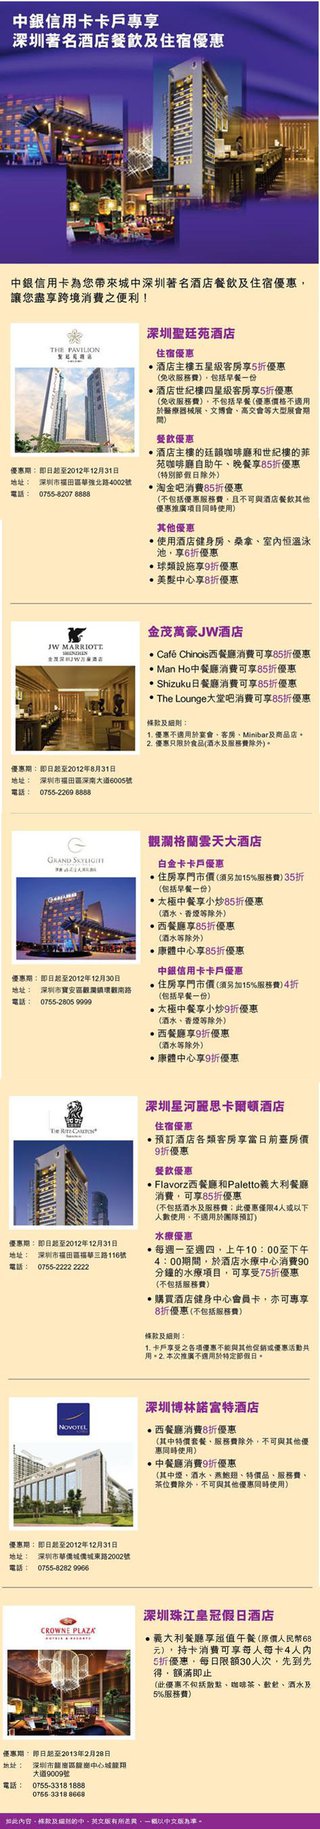 中銀信用卡用戶專享深圳著名酒店餐飲及住宿優惠